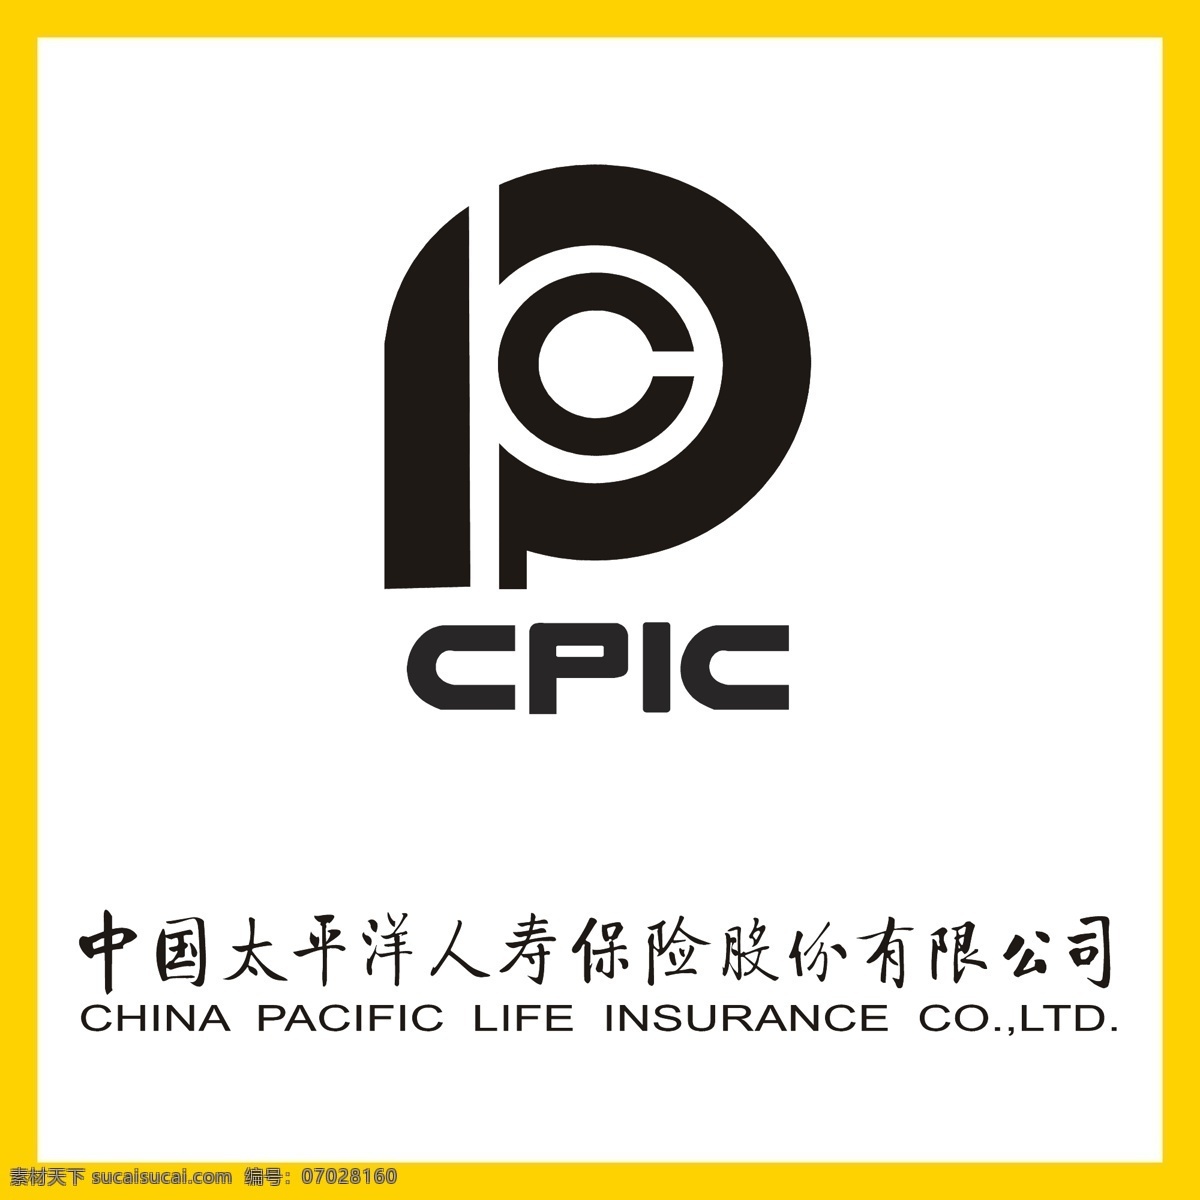 中国 太平洋 人寿保险 中国太平洋 养老院 保证金 银行 信用卡 金融 投资理财 理财产品 贷款 国企 事业单位 logo 标志 矢量 vi logo设计